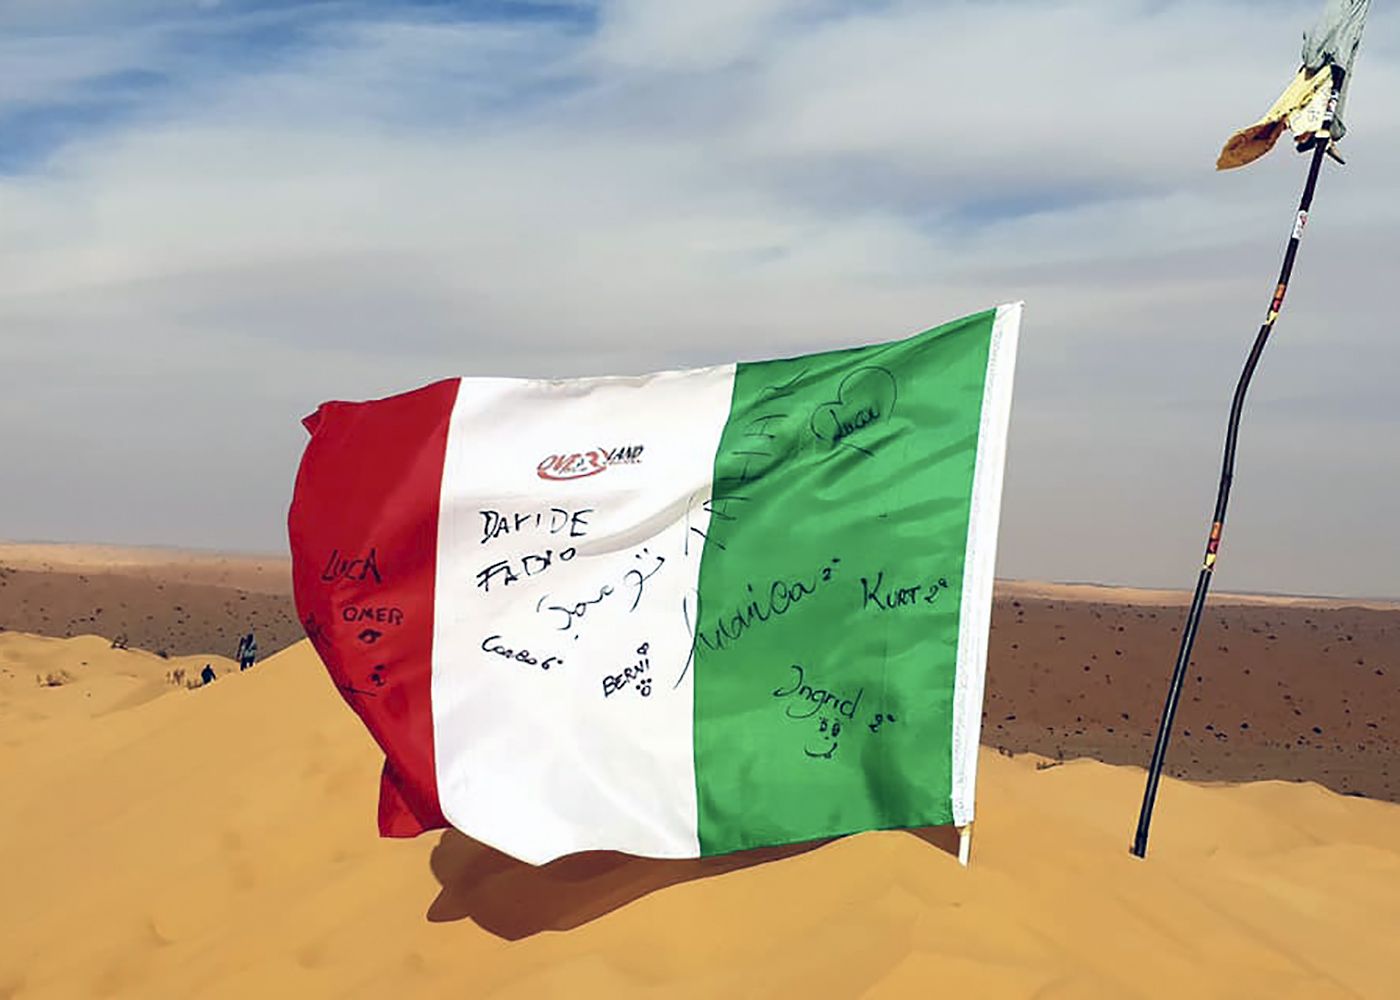 Sif es Souane conquista bandiera firme tunisia deserto estremo